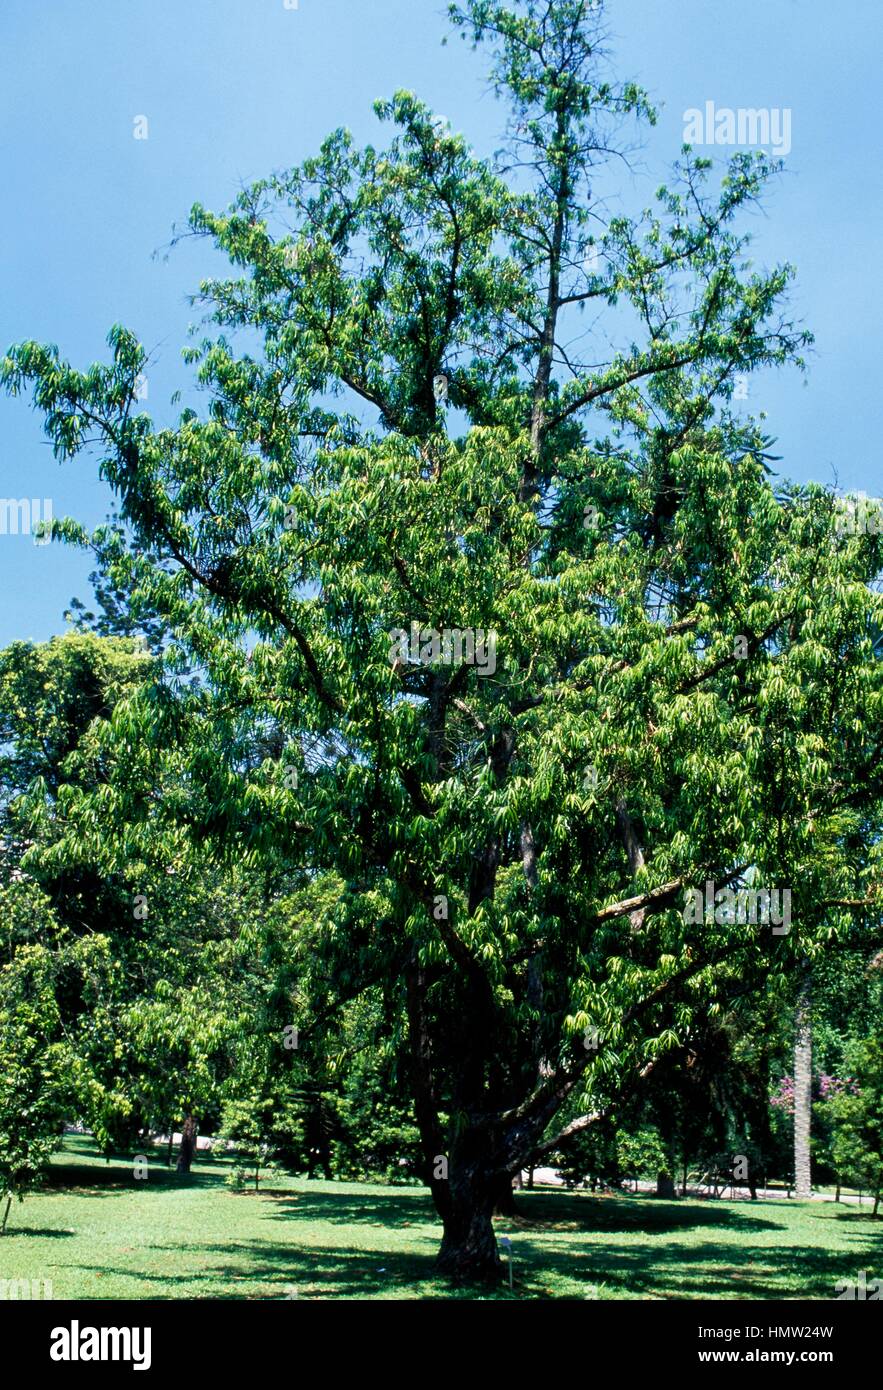 Podocarpus rhumphii, Podocarpaceae. Stock Photo